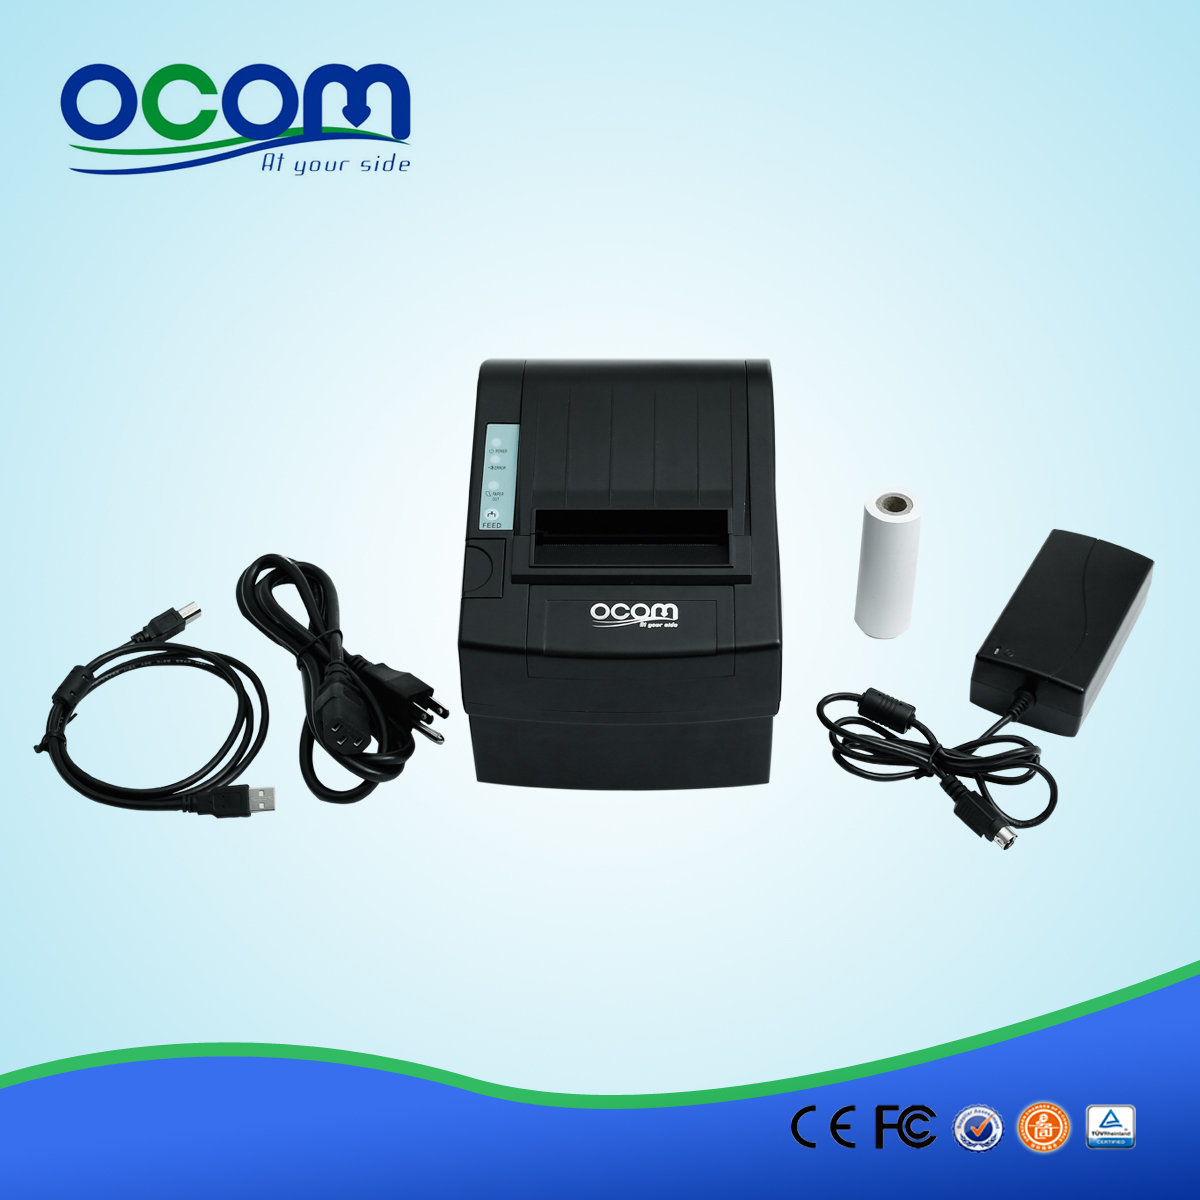 80mm wysokiej jakości odbiór bezprzewodowej wifi POS drukarki-OCPP W-806-